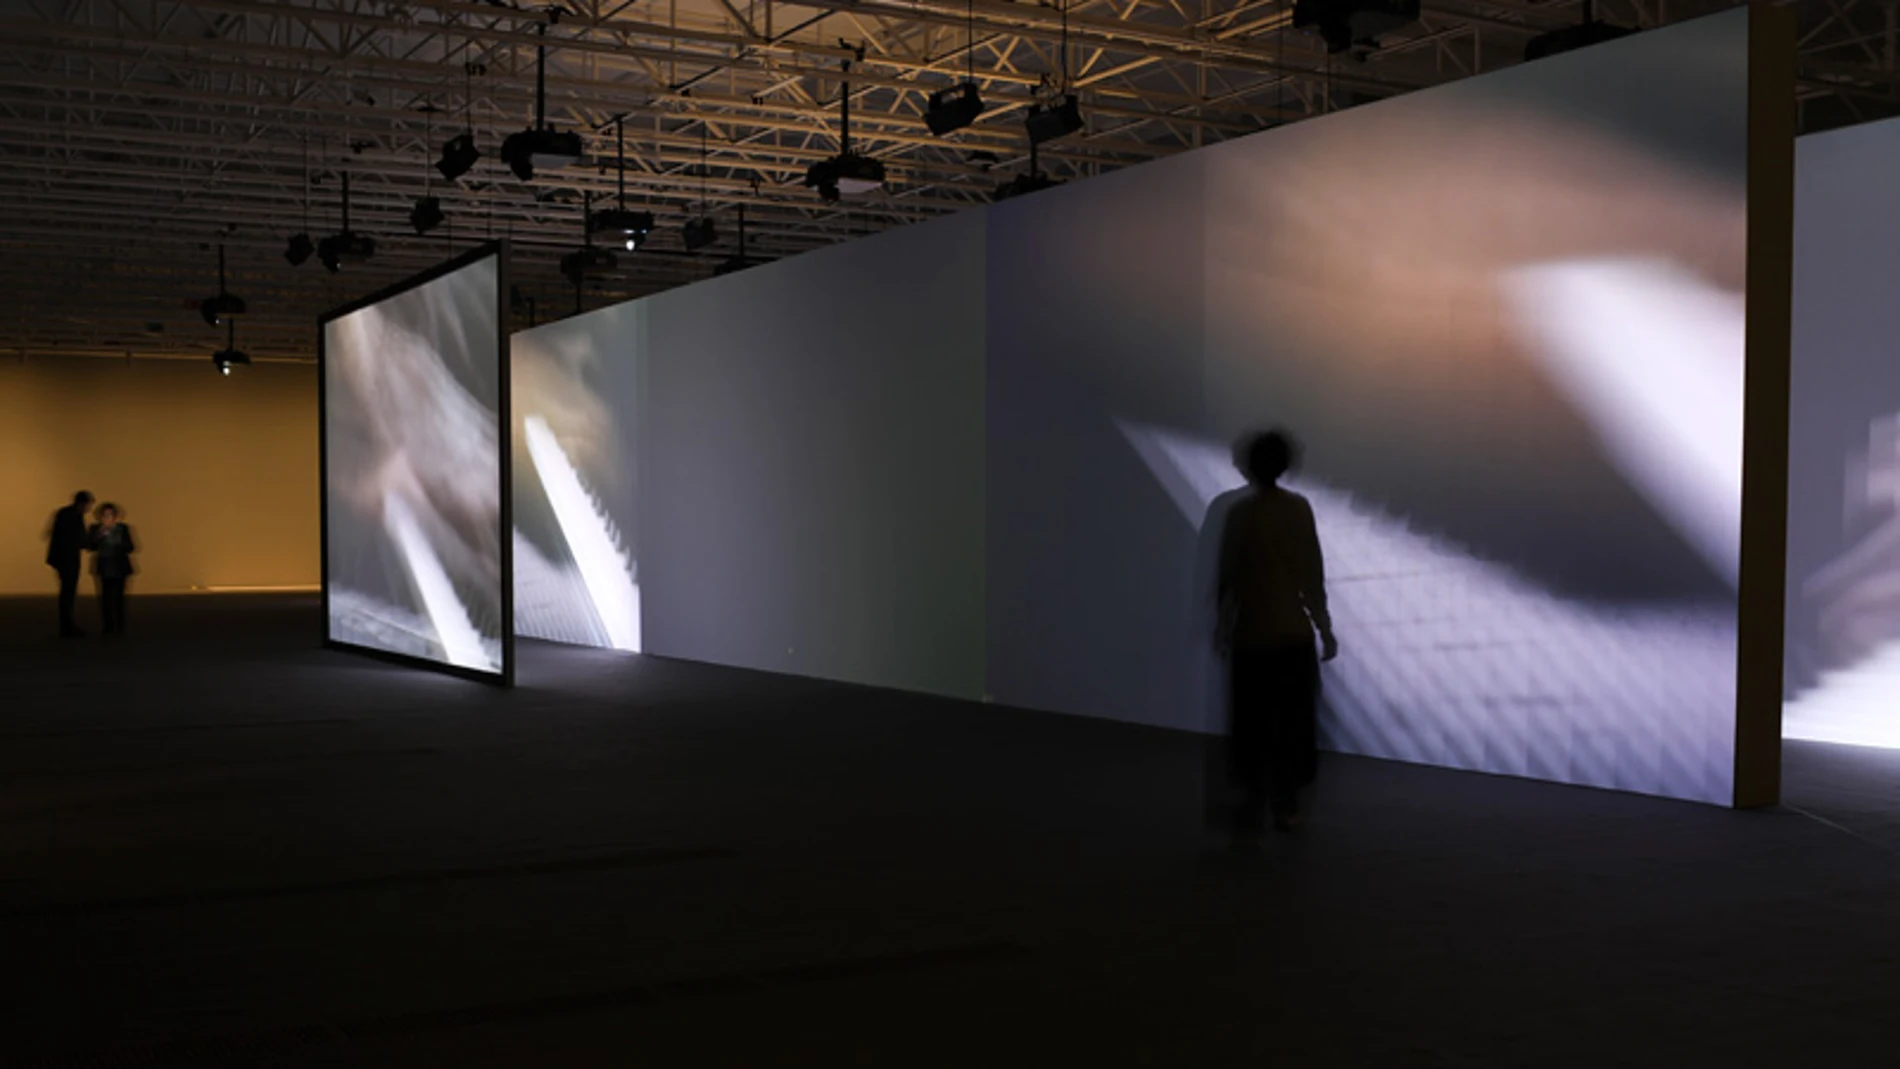 Múltiples pantallas con imágenes en movimiento y sonidos atmosféricos conforman estas instalaciones